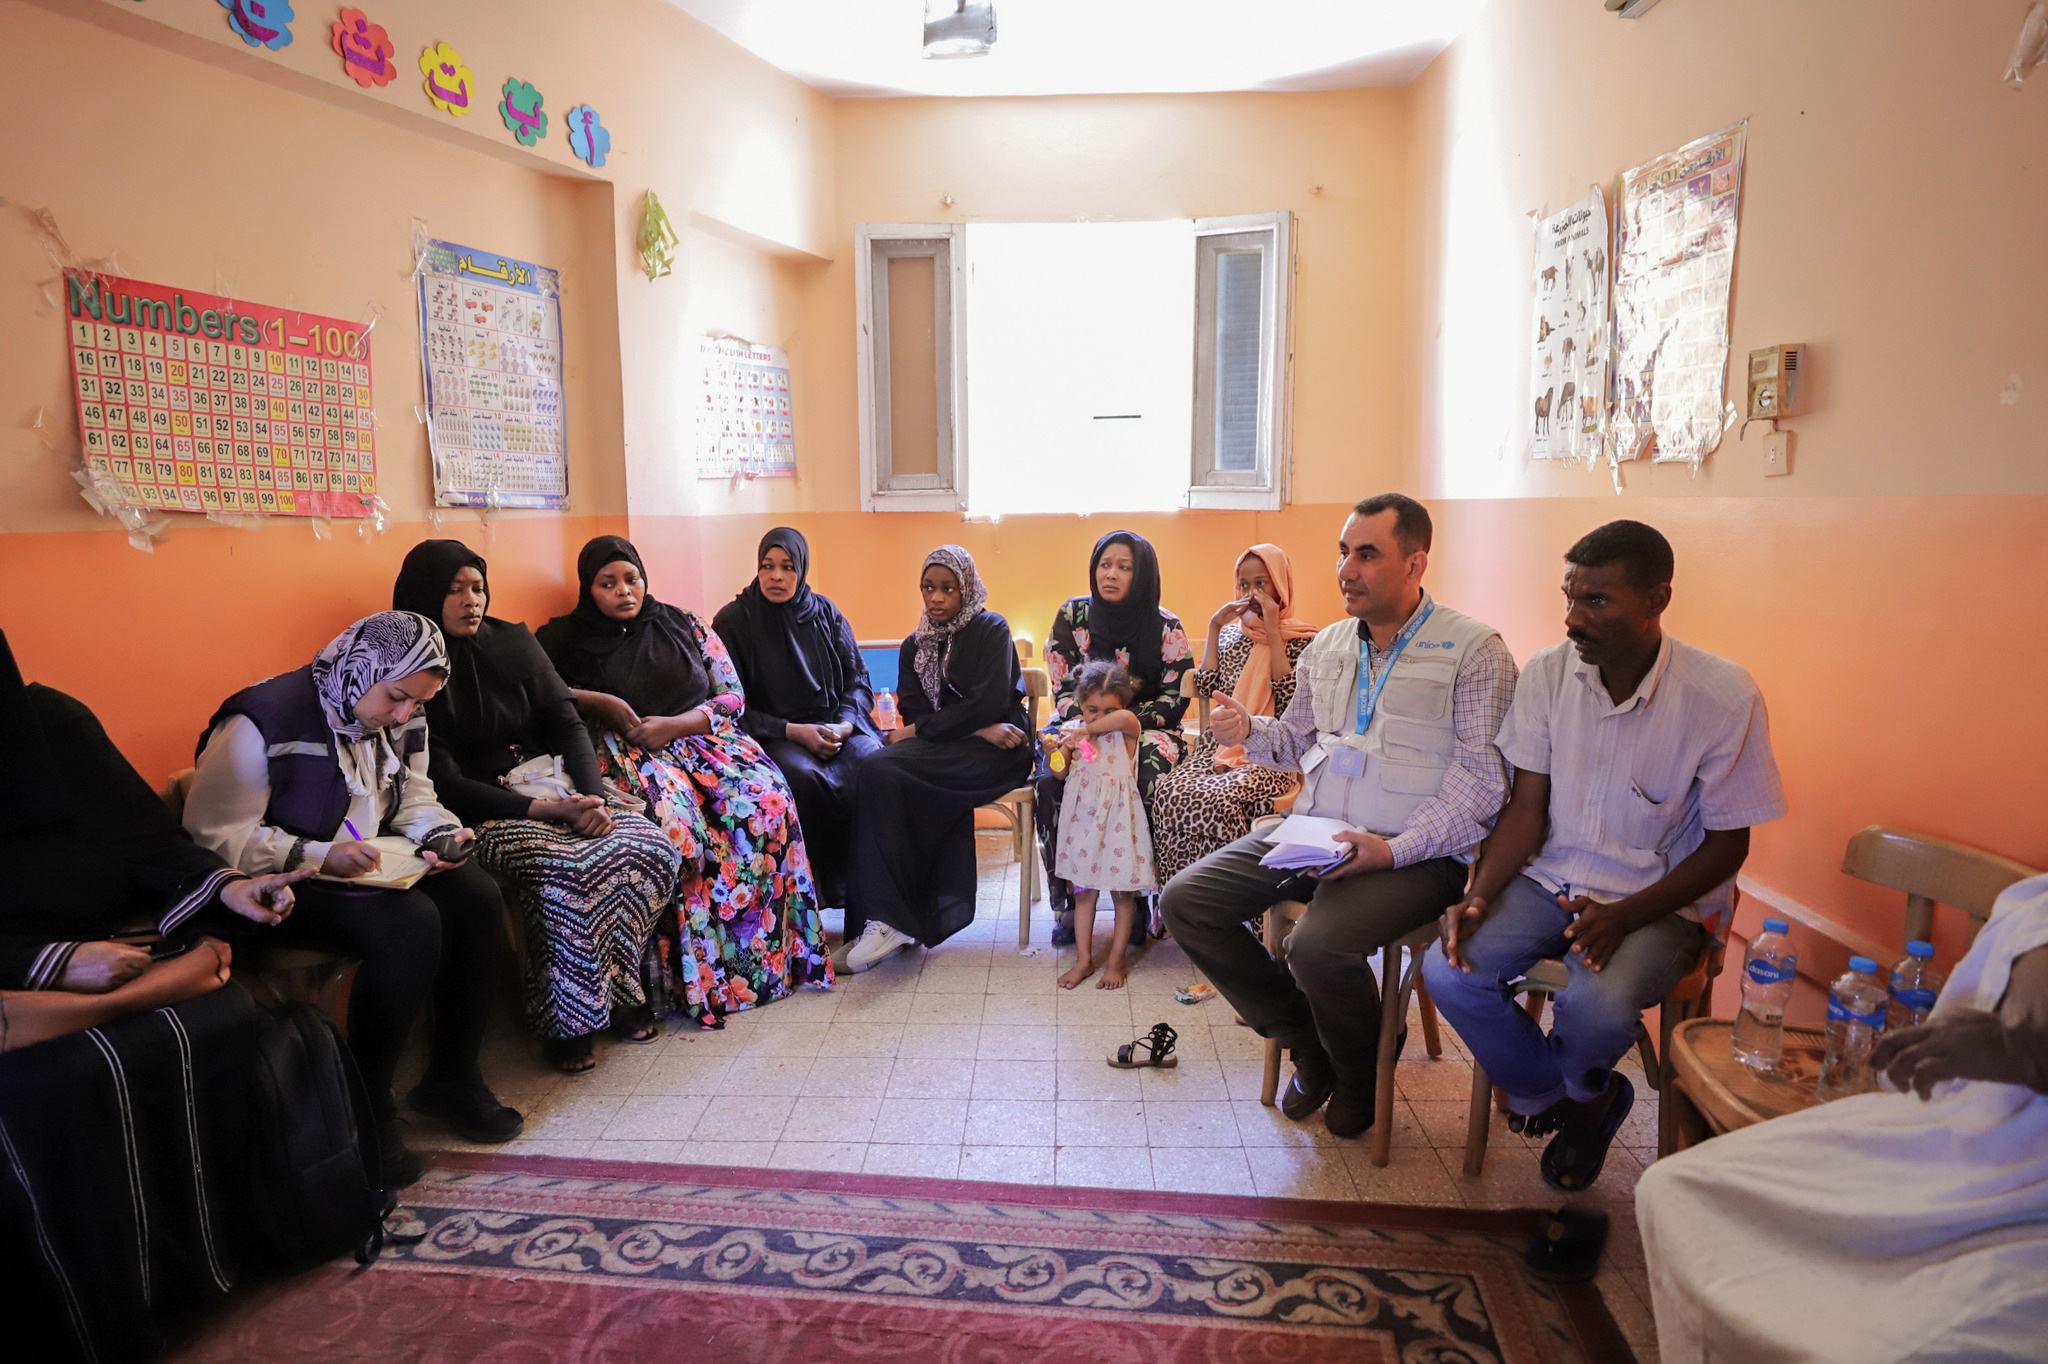 أيمن محارب، ممثل عن منظمة اليونيسف في مصر يتحدث مع أسر سودانية،  في إحدى جلسات الإرشاد النفسي بنادي الأسرة للسودانيين بموقف كركر الدولي بأسوان.